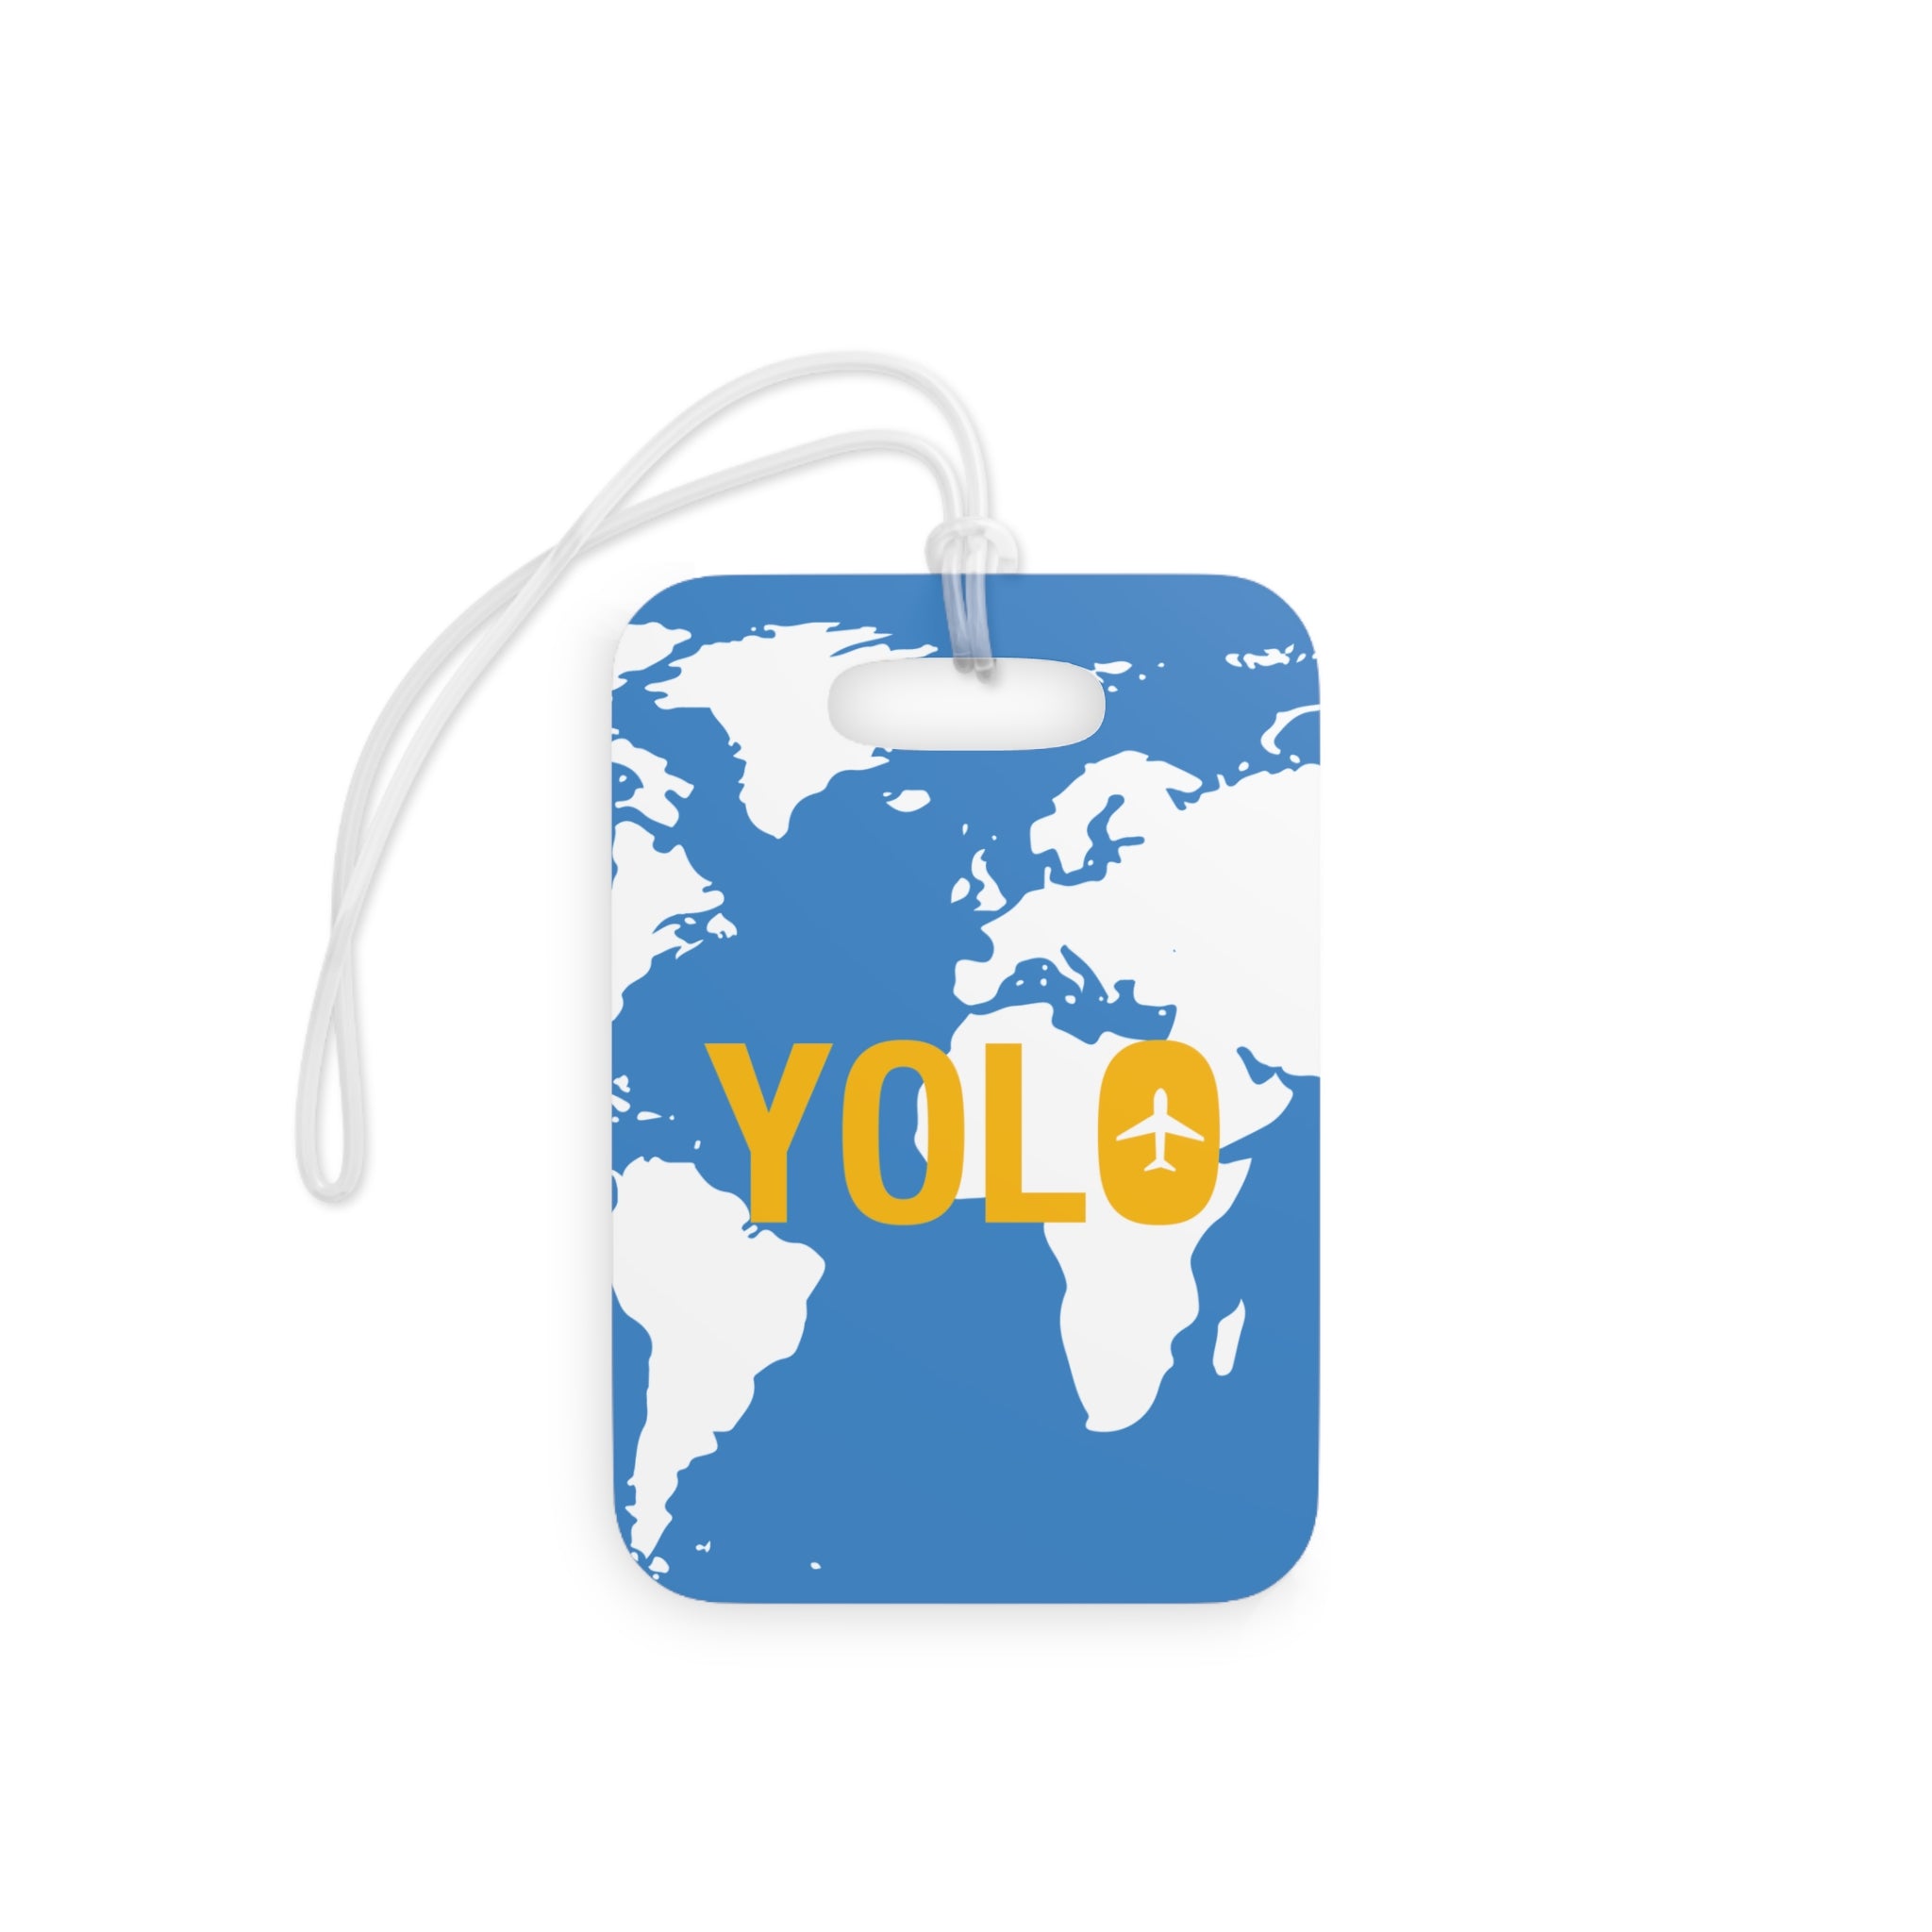 Yolo Luggage Tag (Blue)